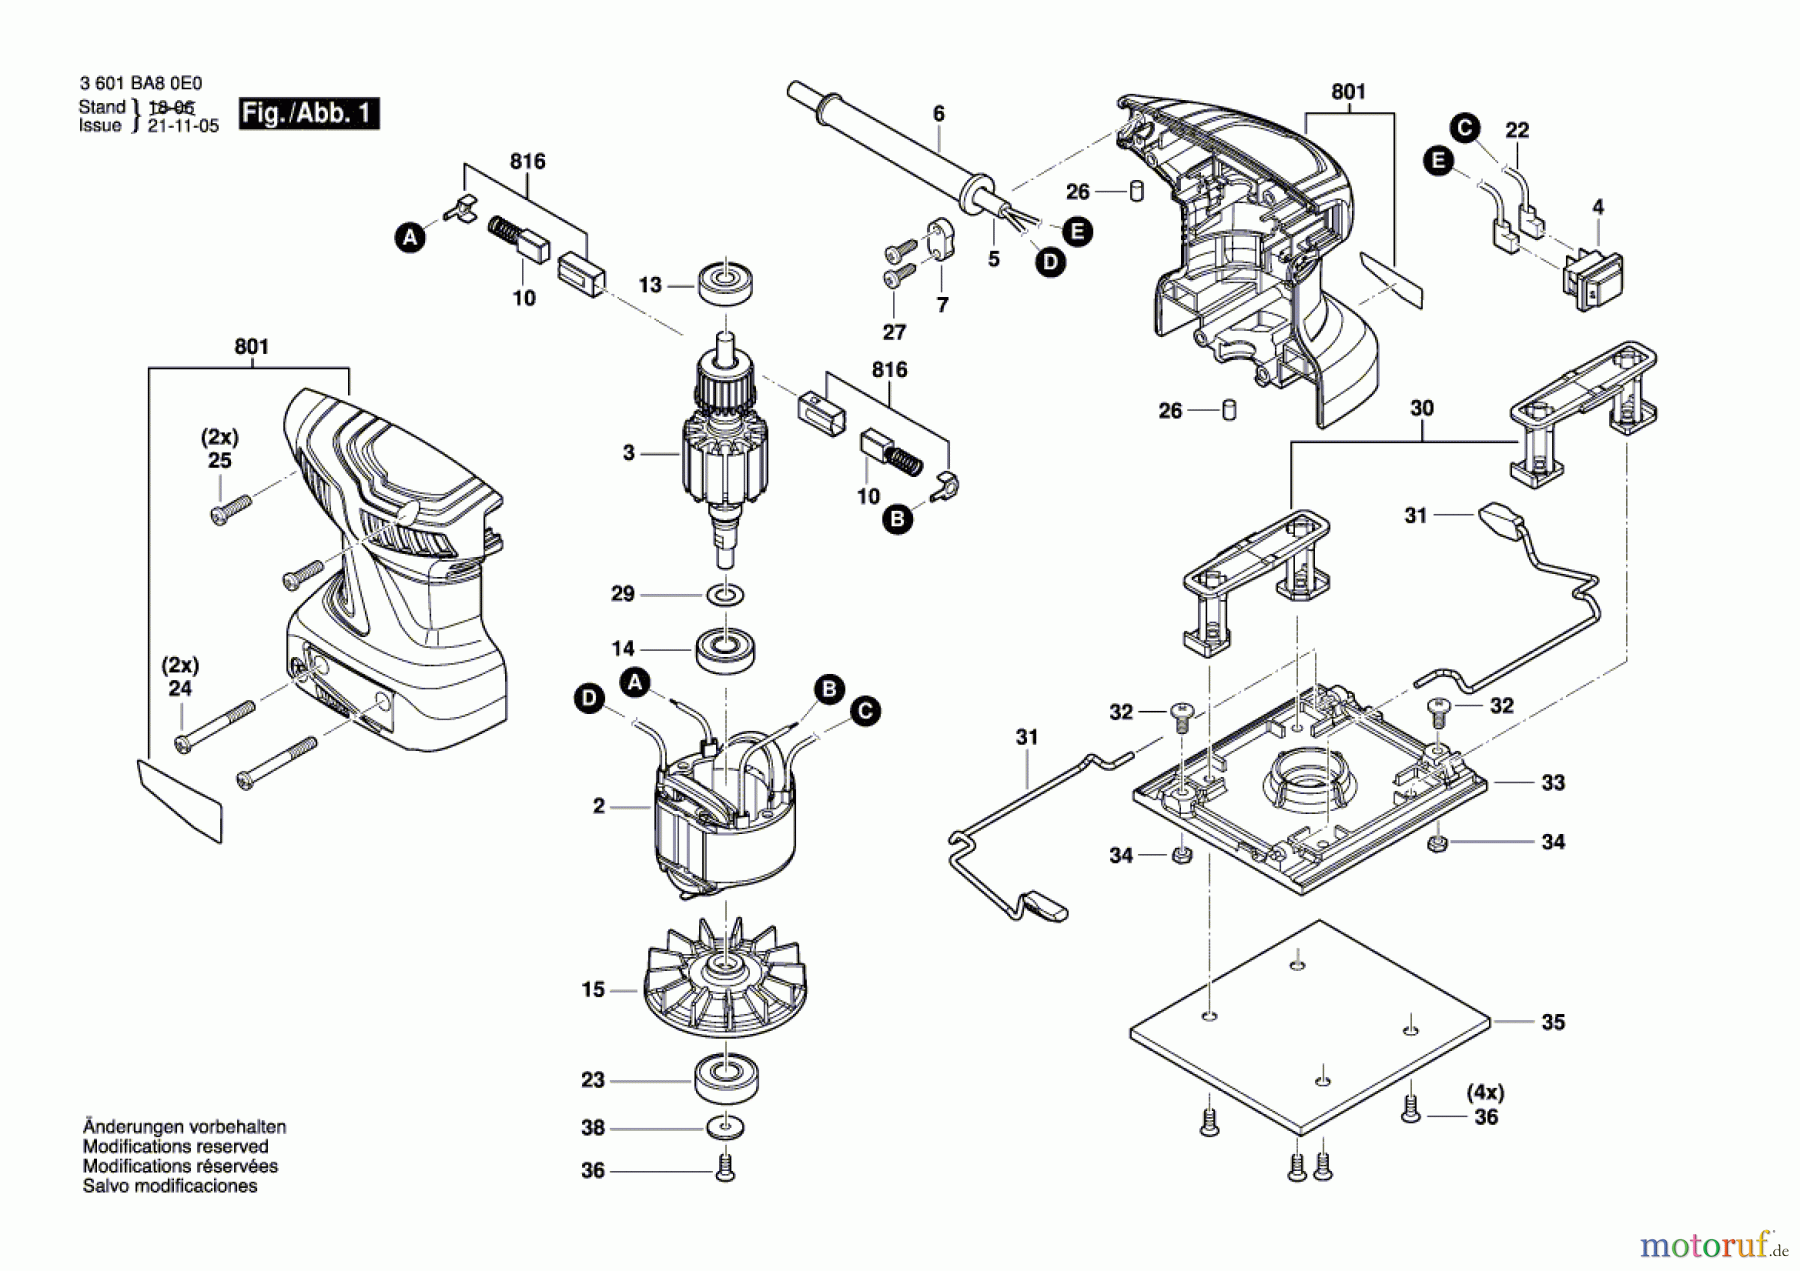  Bosch Werkzeug Schwingschleifer GSS 140 Seite 1